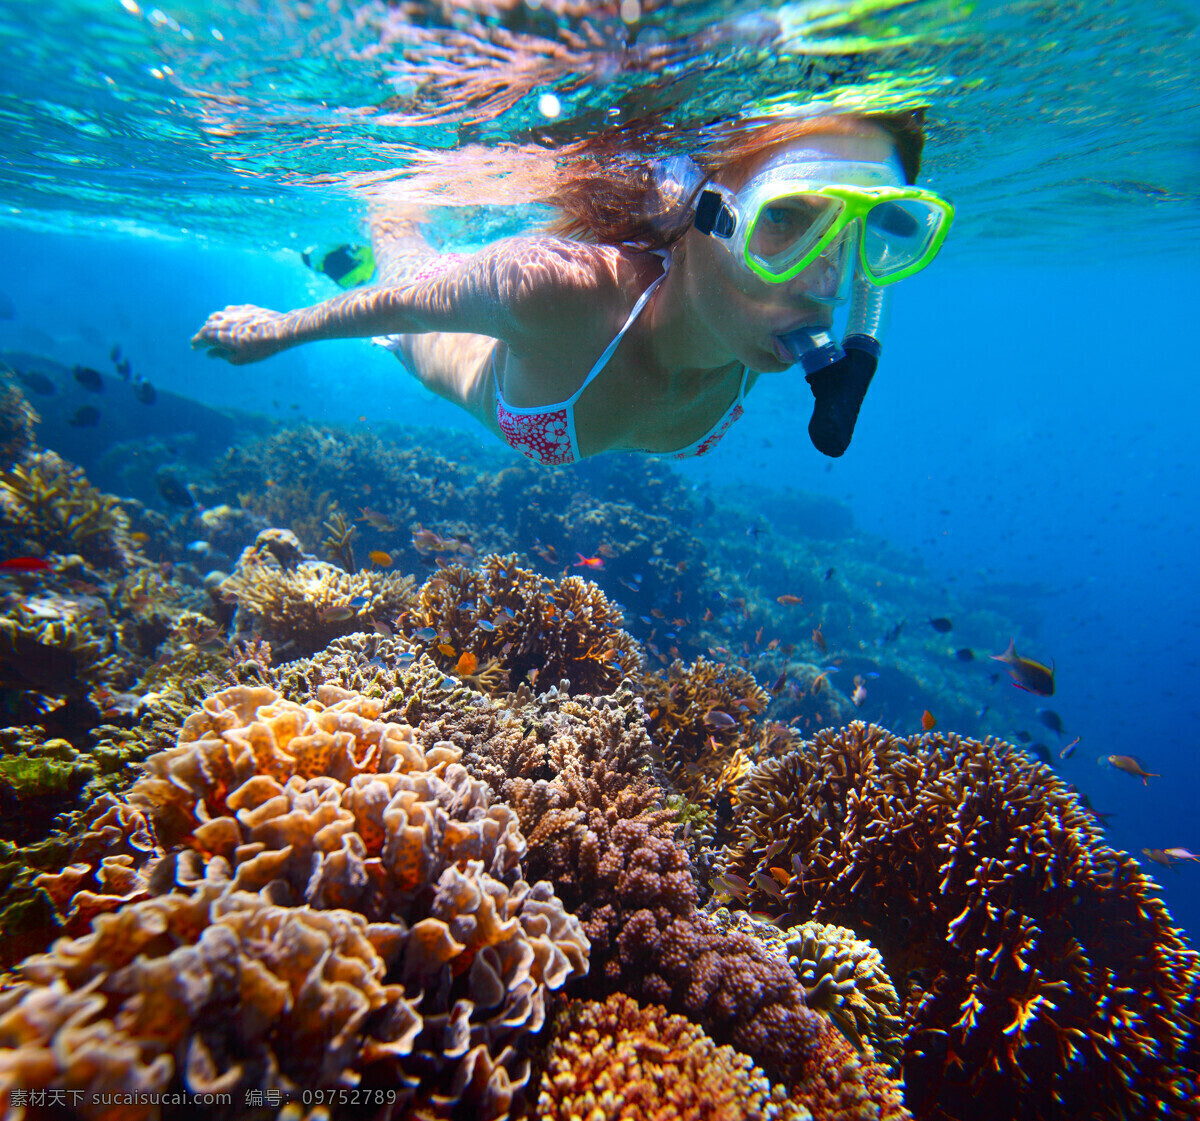 海底世界 潜水 比基尼美女 比基尼 潜水镜 水下 水底 水里 珊瑚 生物 游鱼 鱼群 海洋生物 生物世界